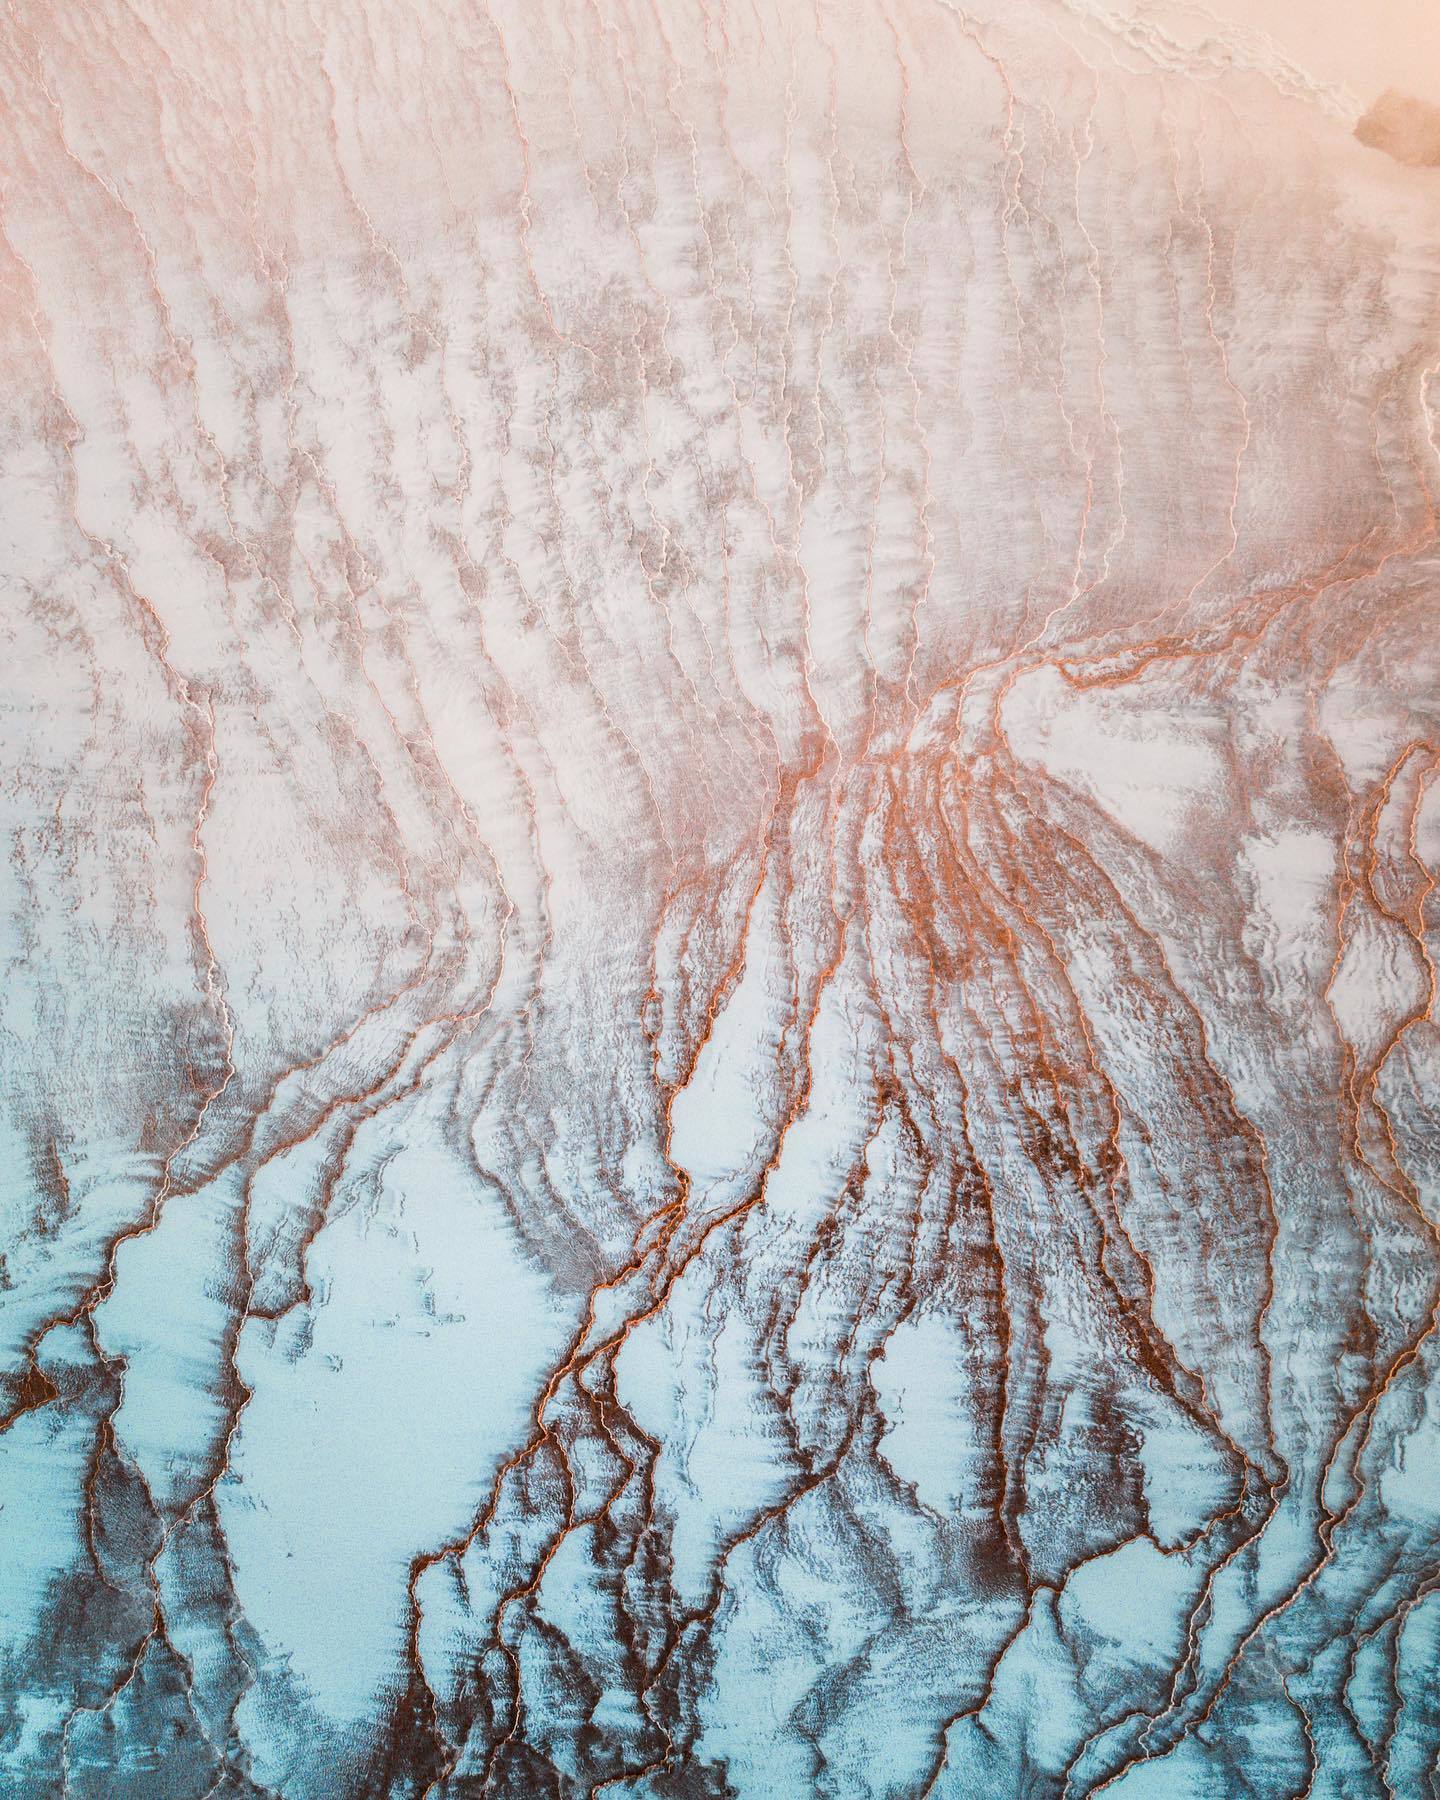  晨曦中的冰岛，来自摄影师Kevin Pages。 